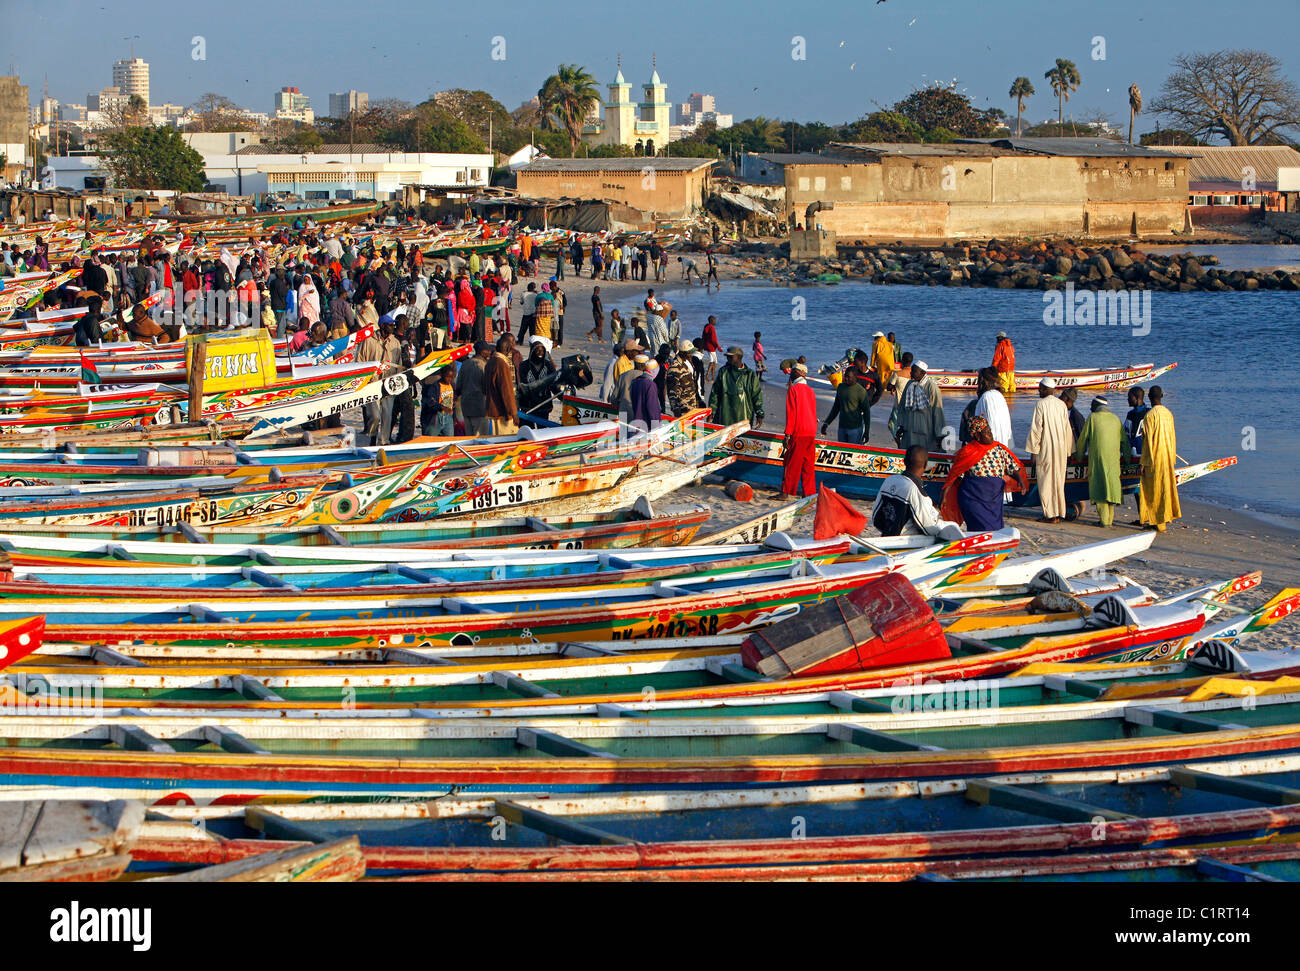 Bunt bemalten Fischerboote säumen den Strand auf dem Fischmarkt in Dakar, Senegal Stockfoto